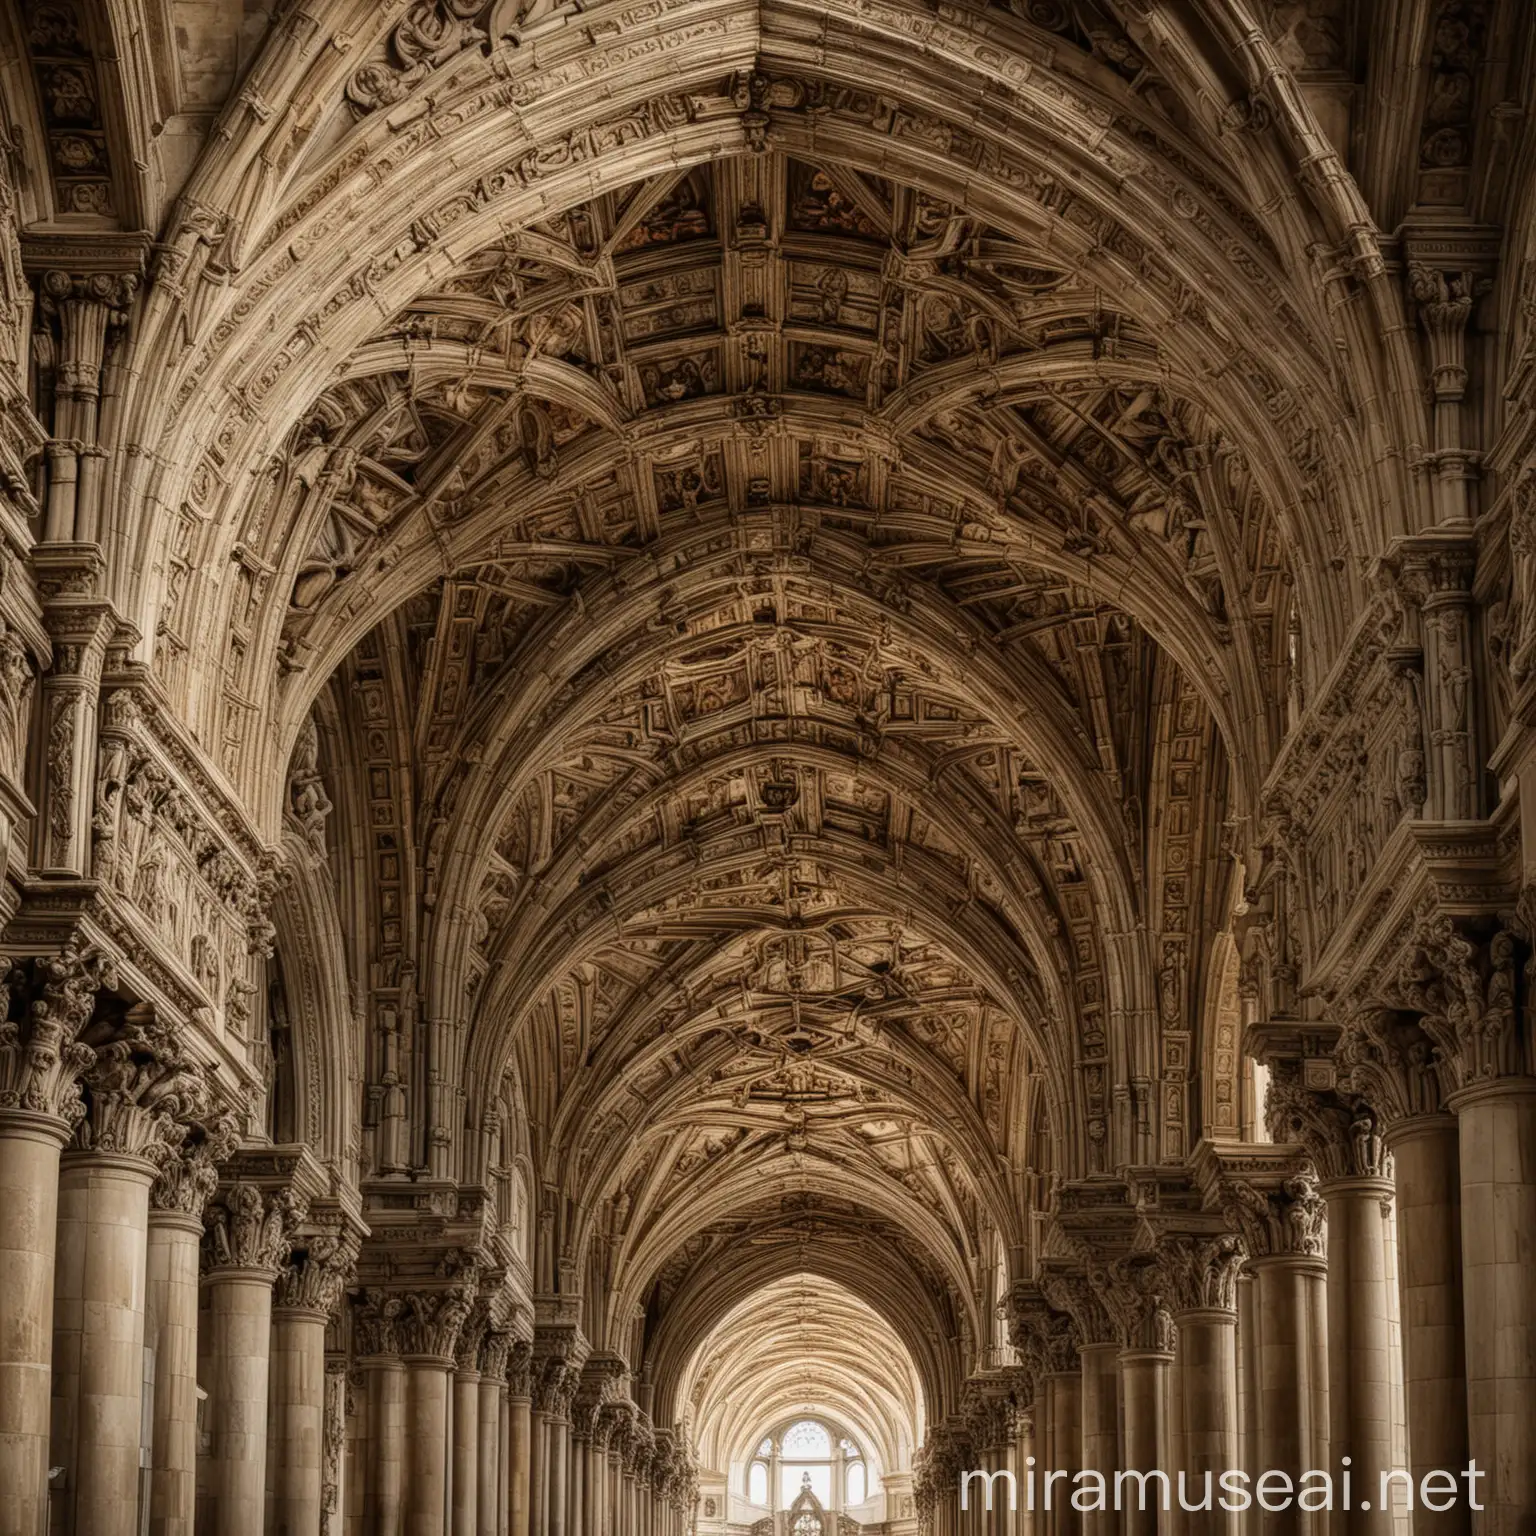 Exquisite Renaissance Architecture Grand Cathedrals Palaces and Bridges